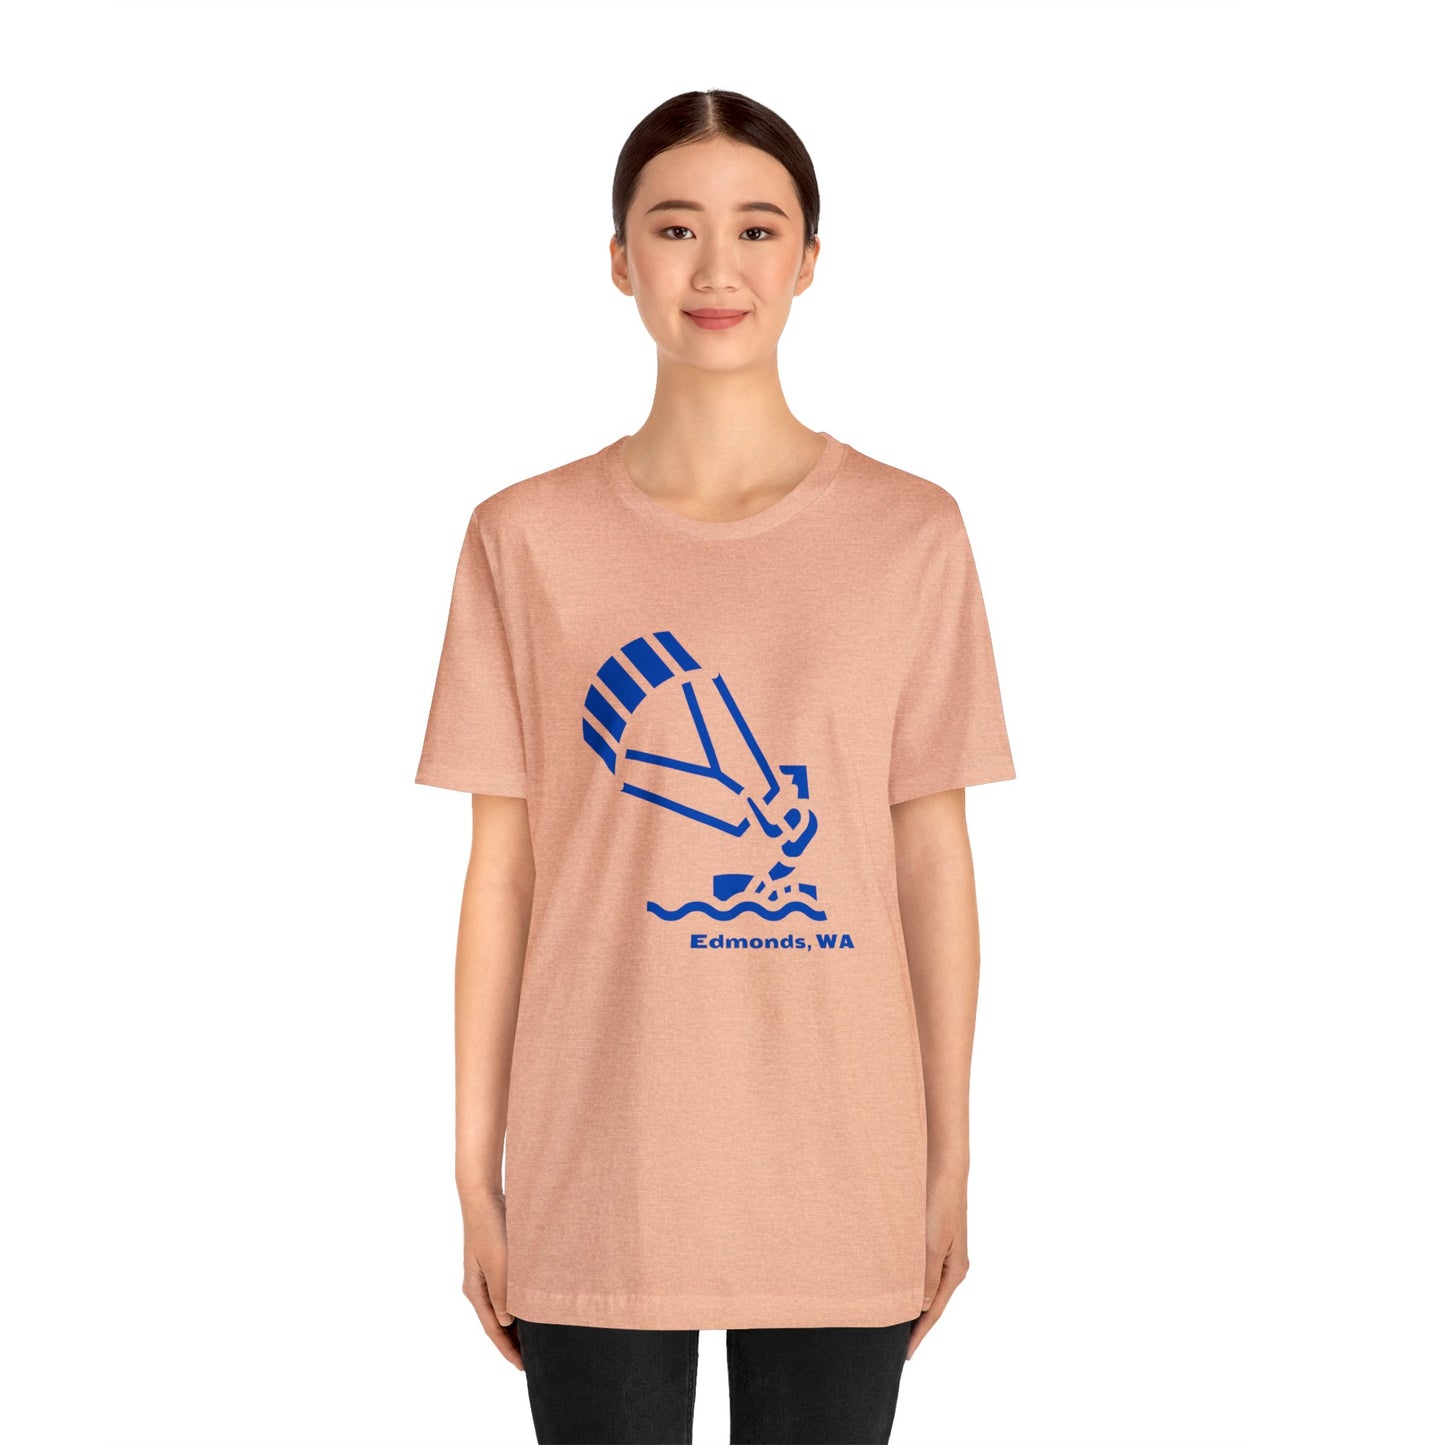 Edmonds Kite Surfer T-shirt